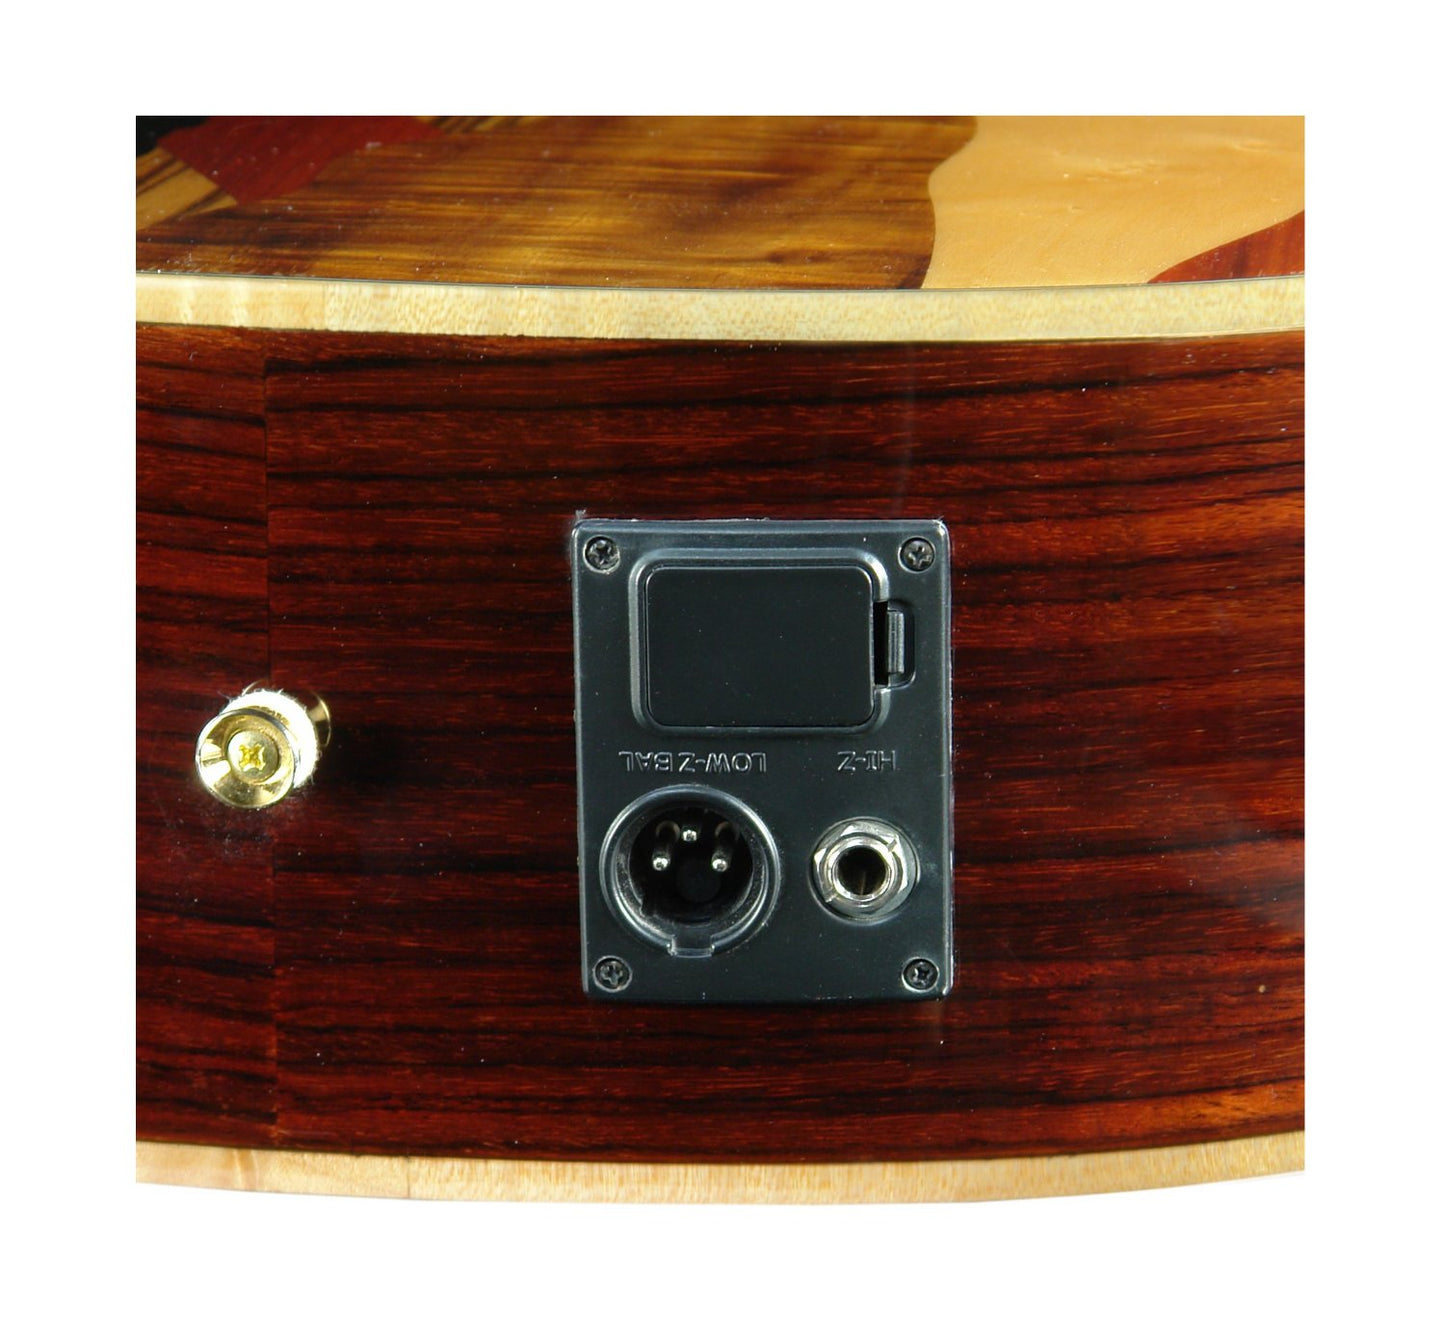 Luna VISTAEAGLE Acoustic/Electric Guitar, Tropical Wood